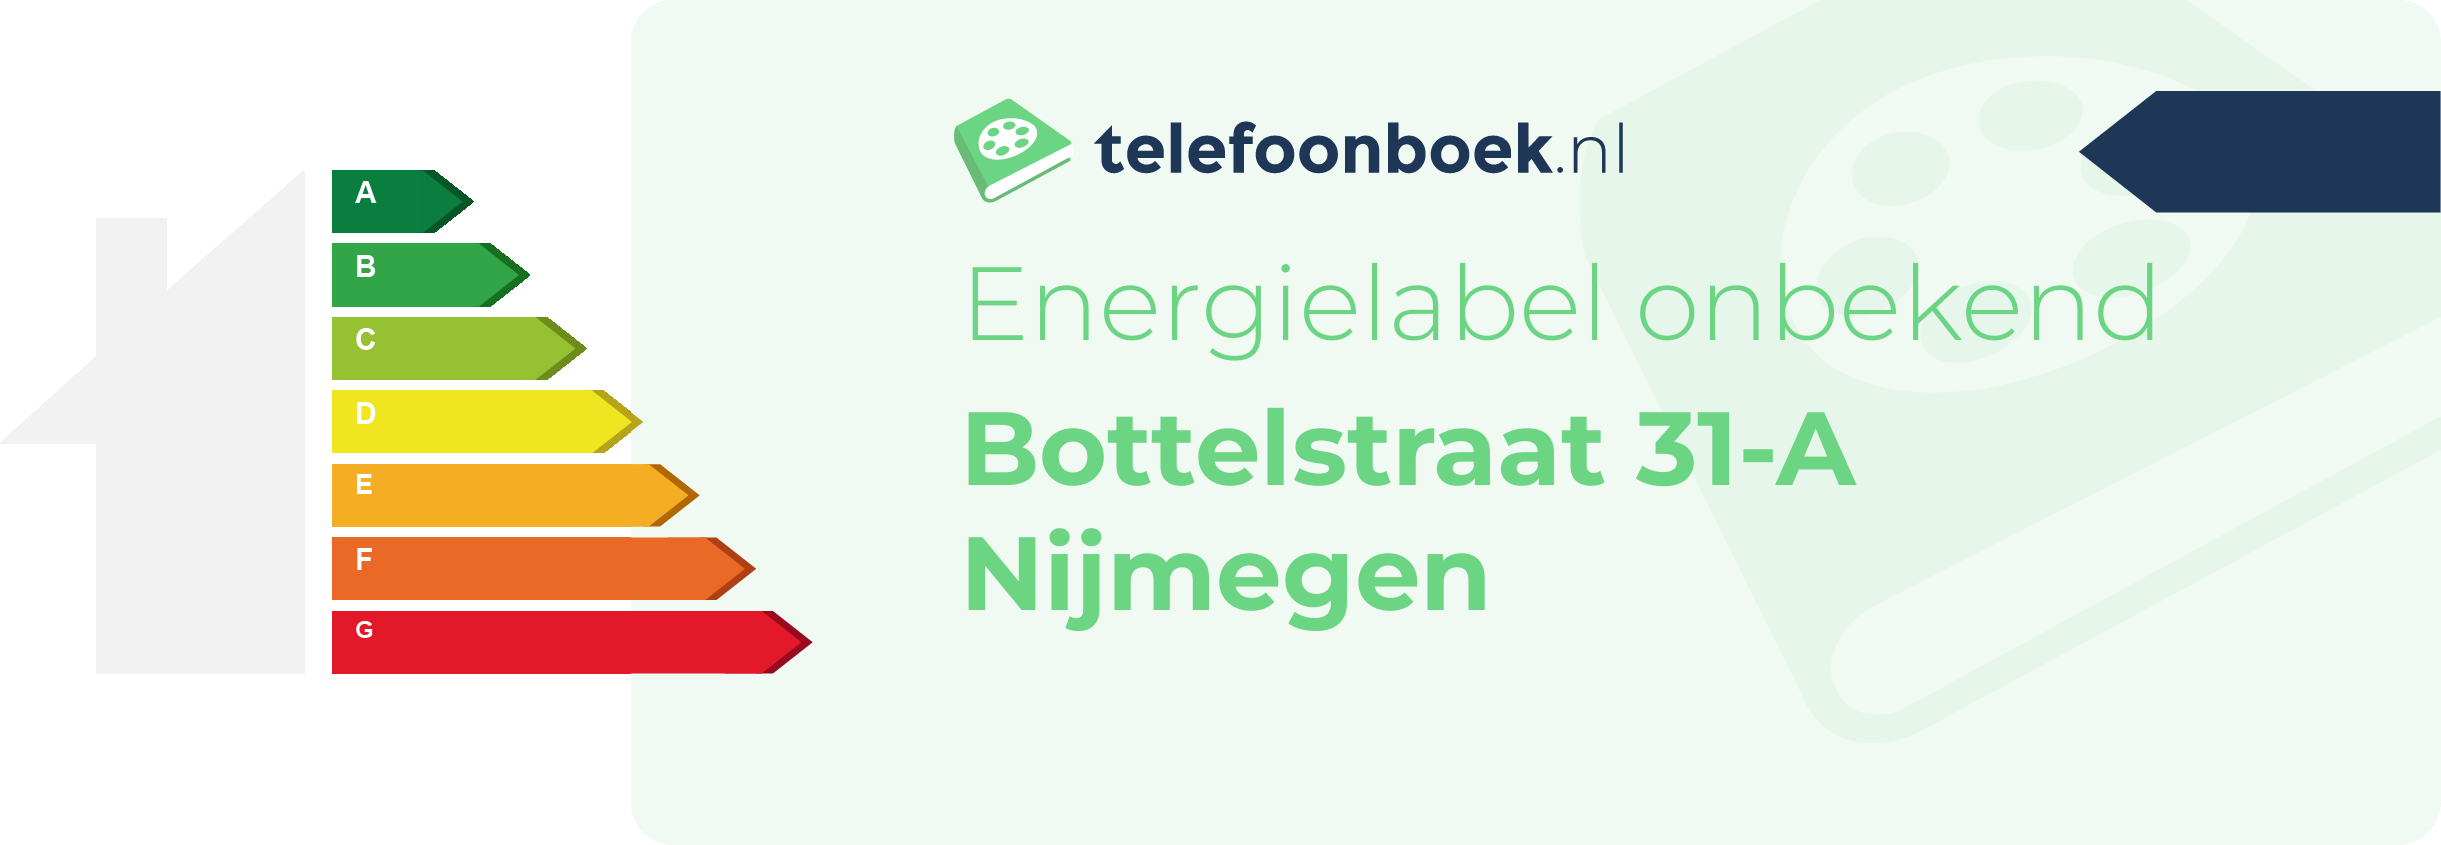 Energielabel Bottelstraat 31-A Nijmegen